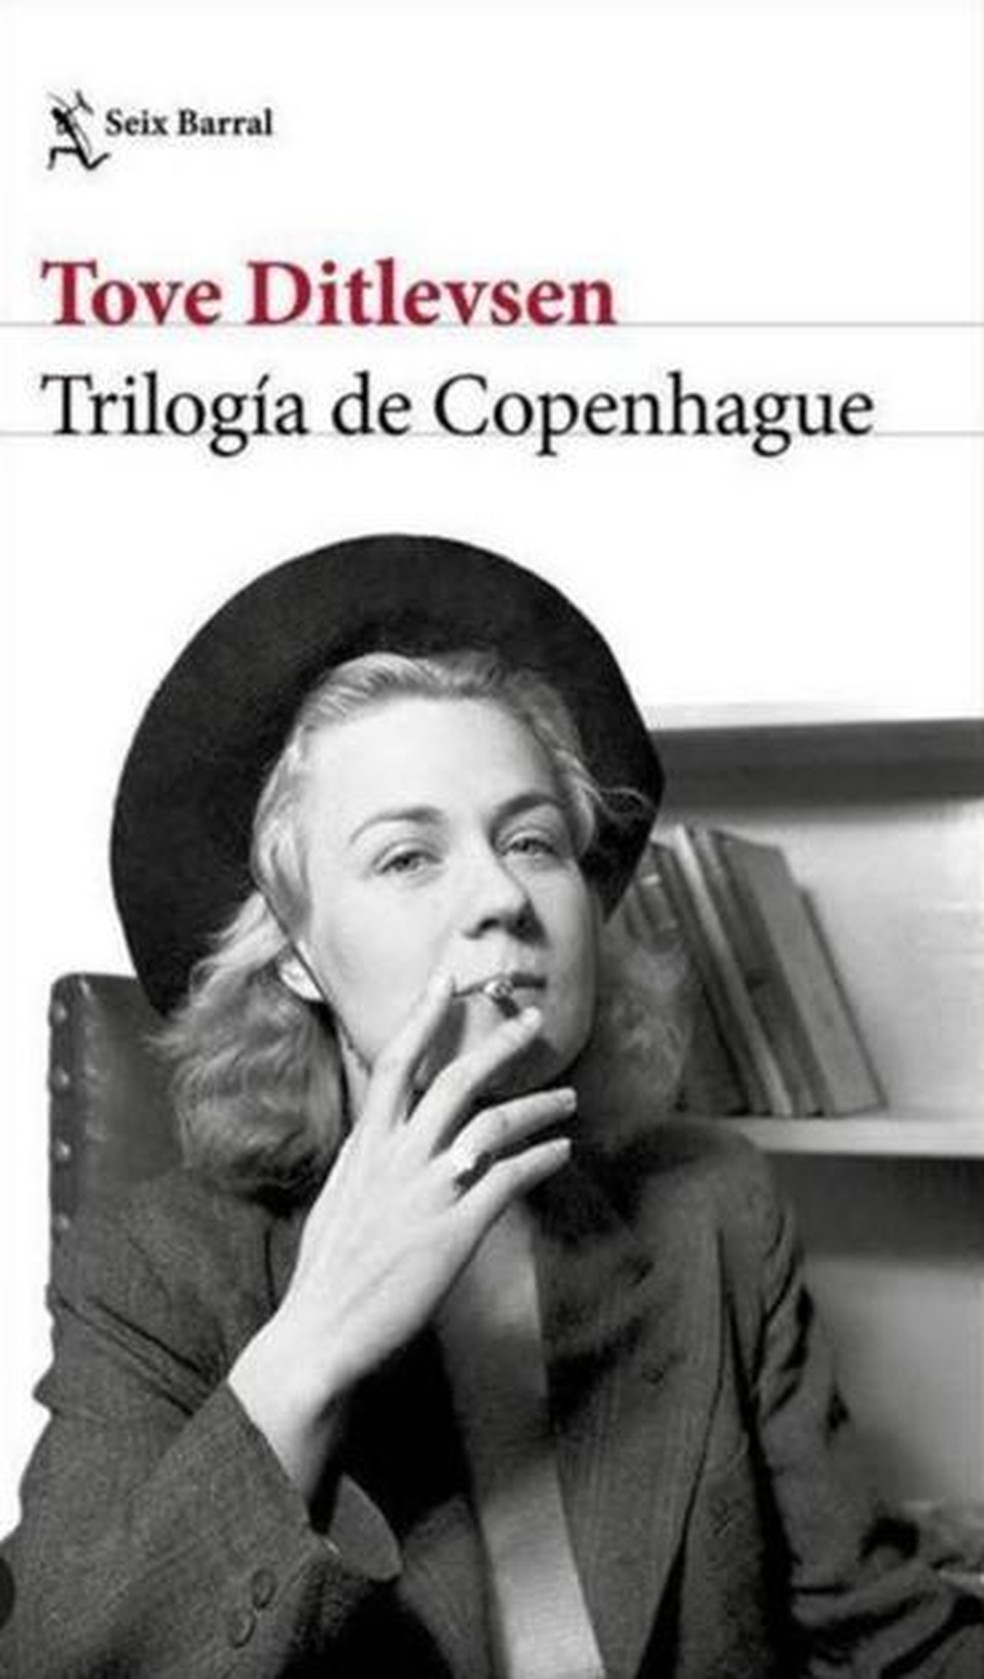 Trilogia de Copenhage: Fenômeno literário será lançado no Brasil pela Companhia das Letras — Foto: Reprodução